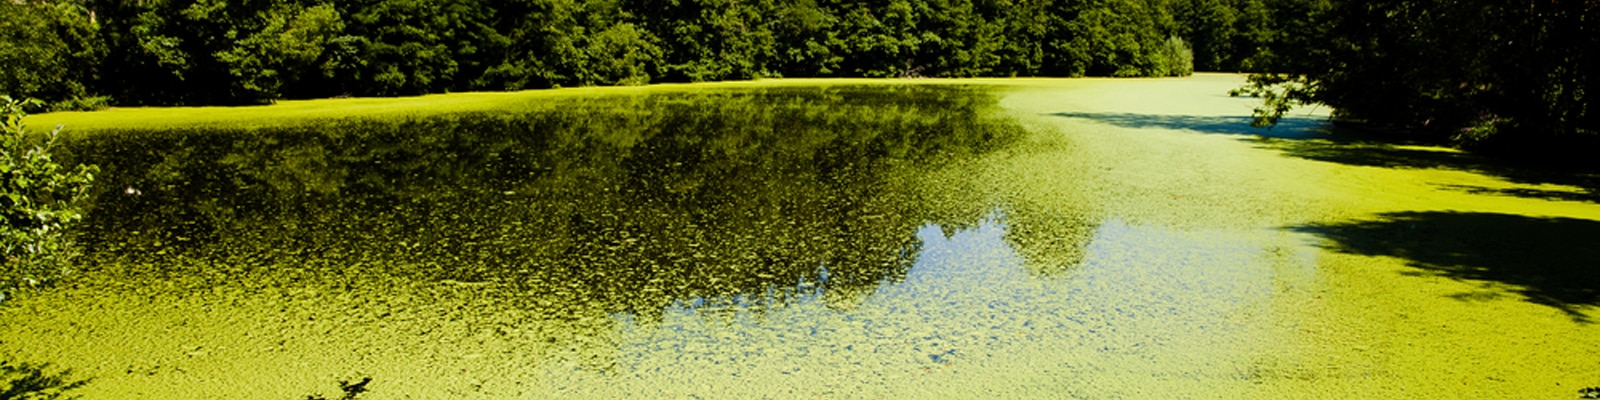 Algae blooms on fresh water